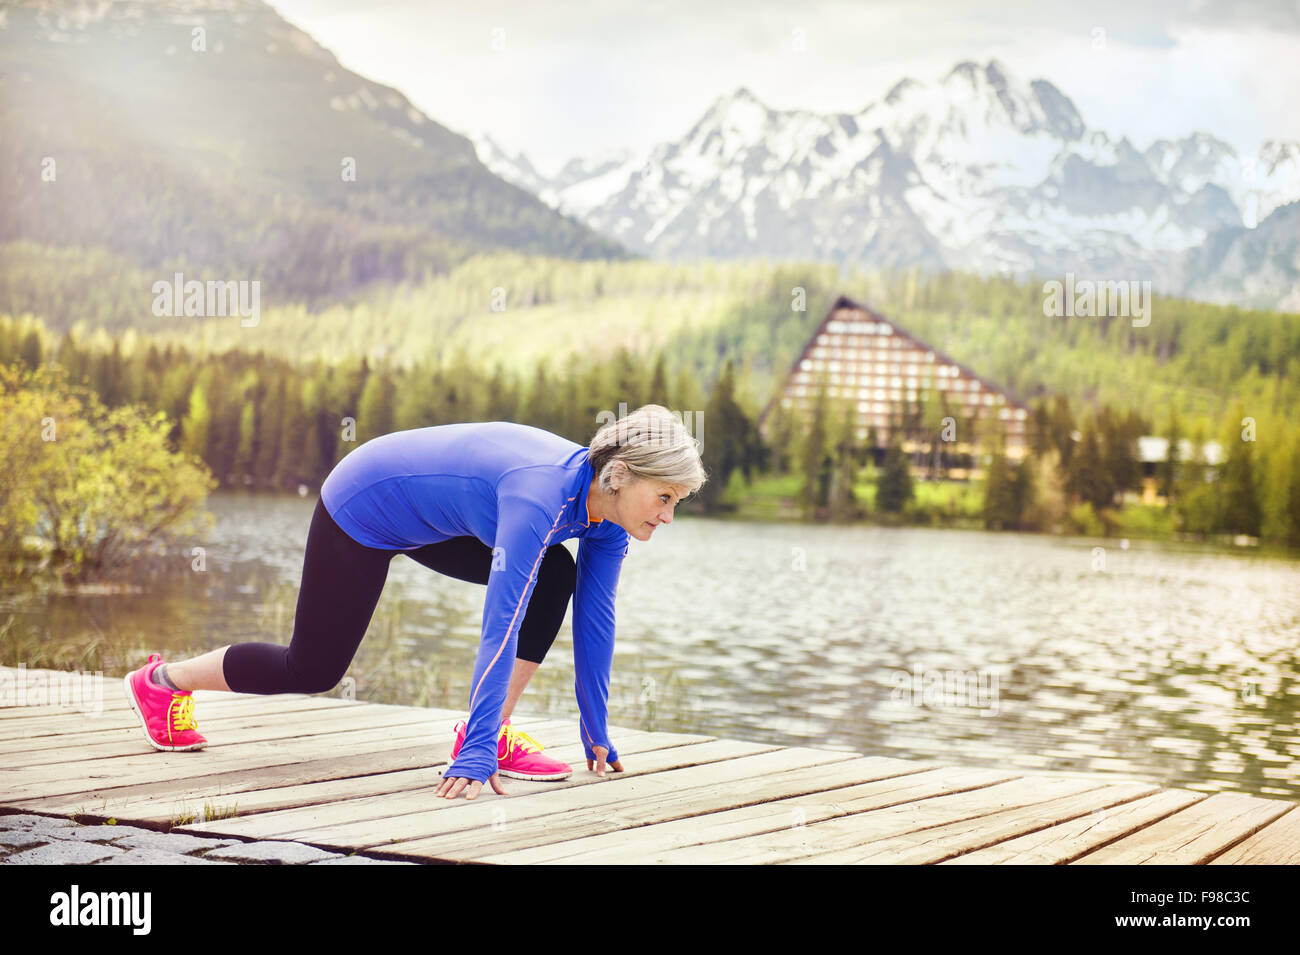 Ältere Frau ist immer bereit, jogging-Runde Tarn in wunderschöne Berge, Hügel und Hotel im Hintergrund Stockfoto